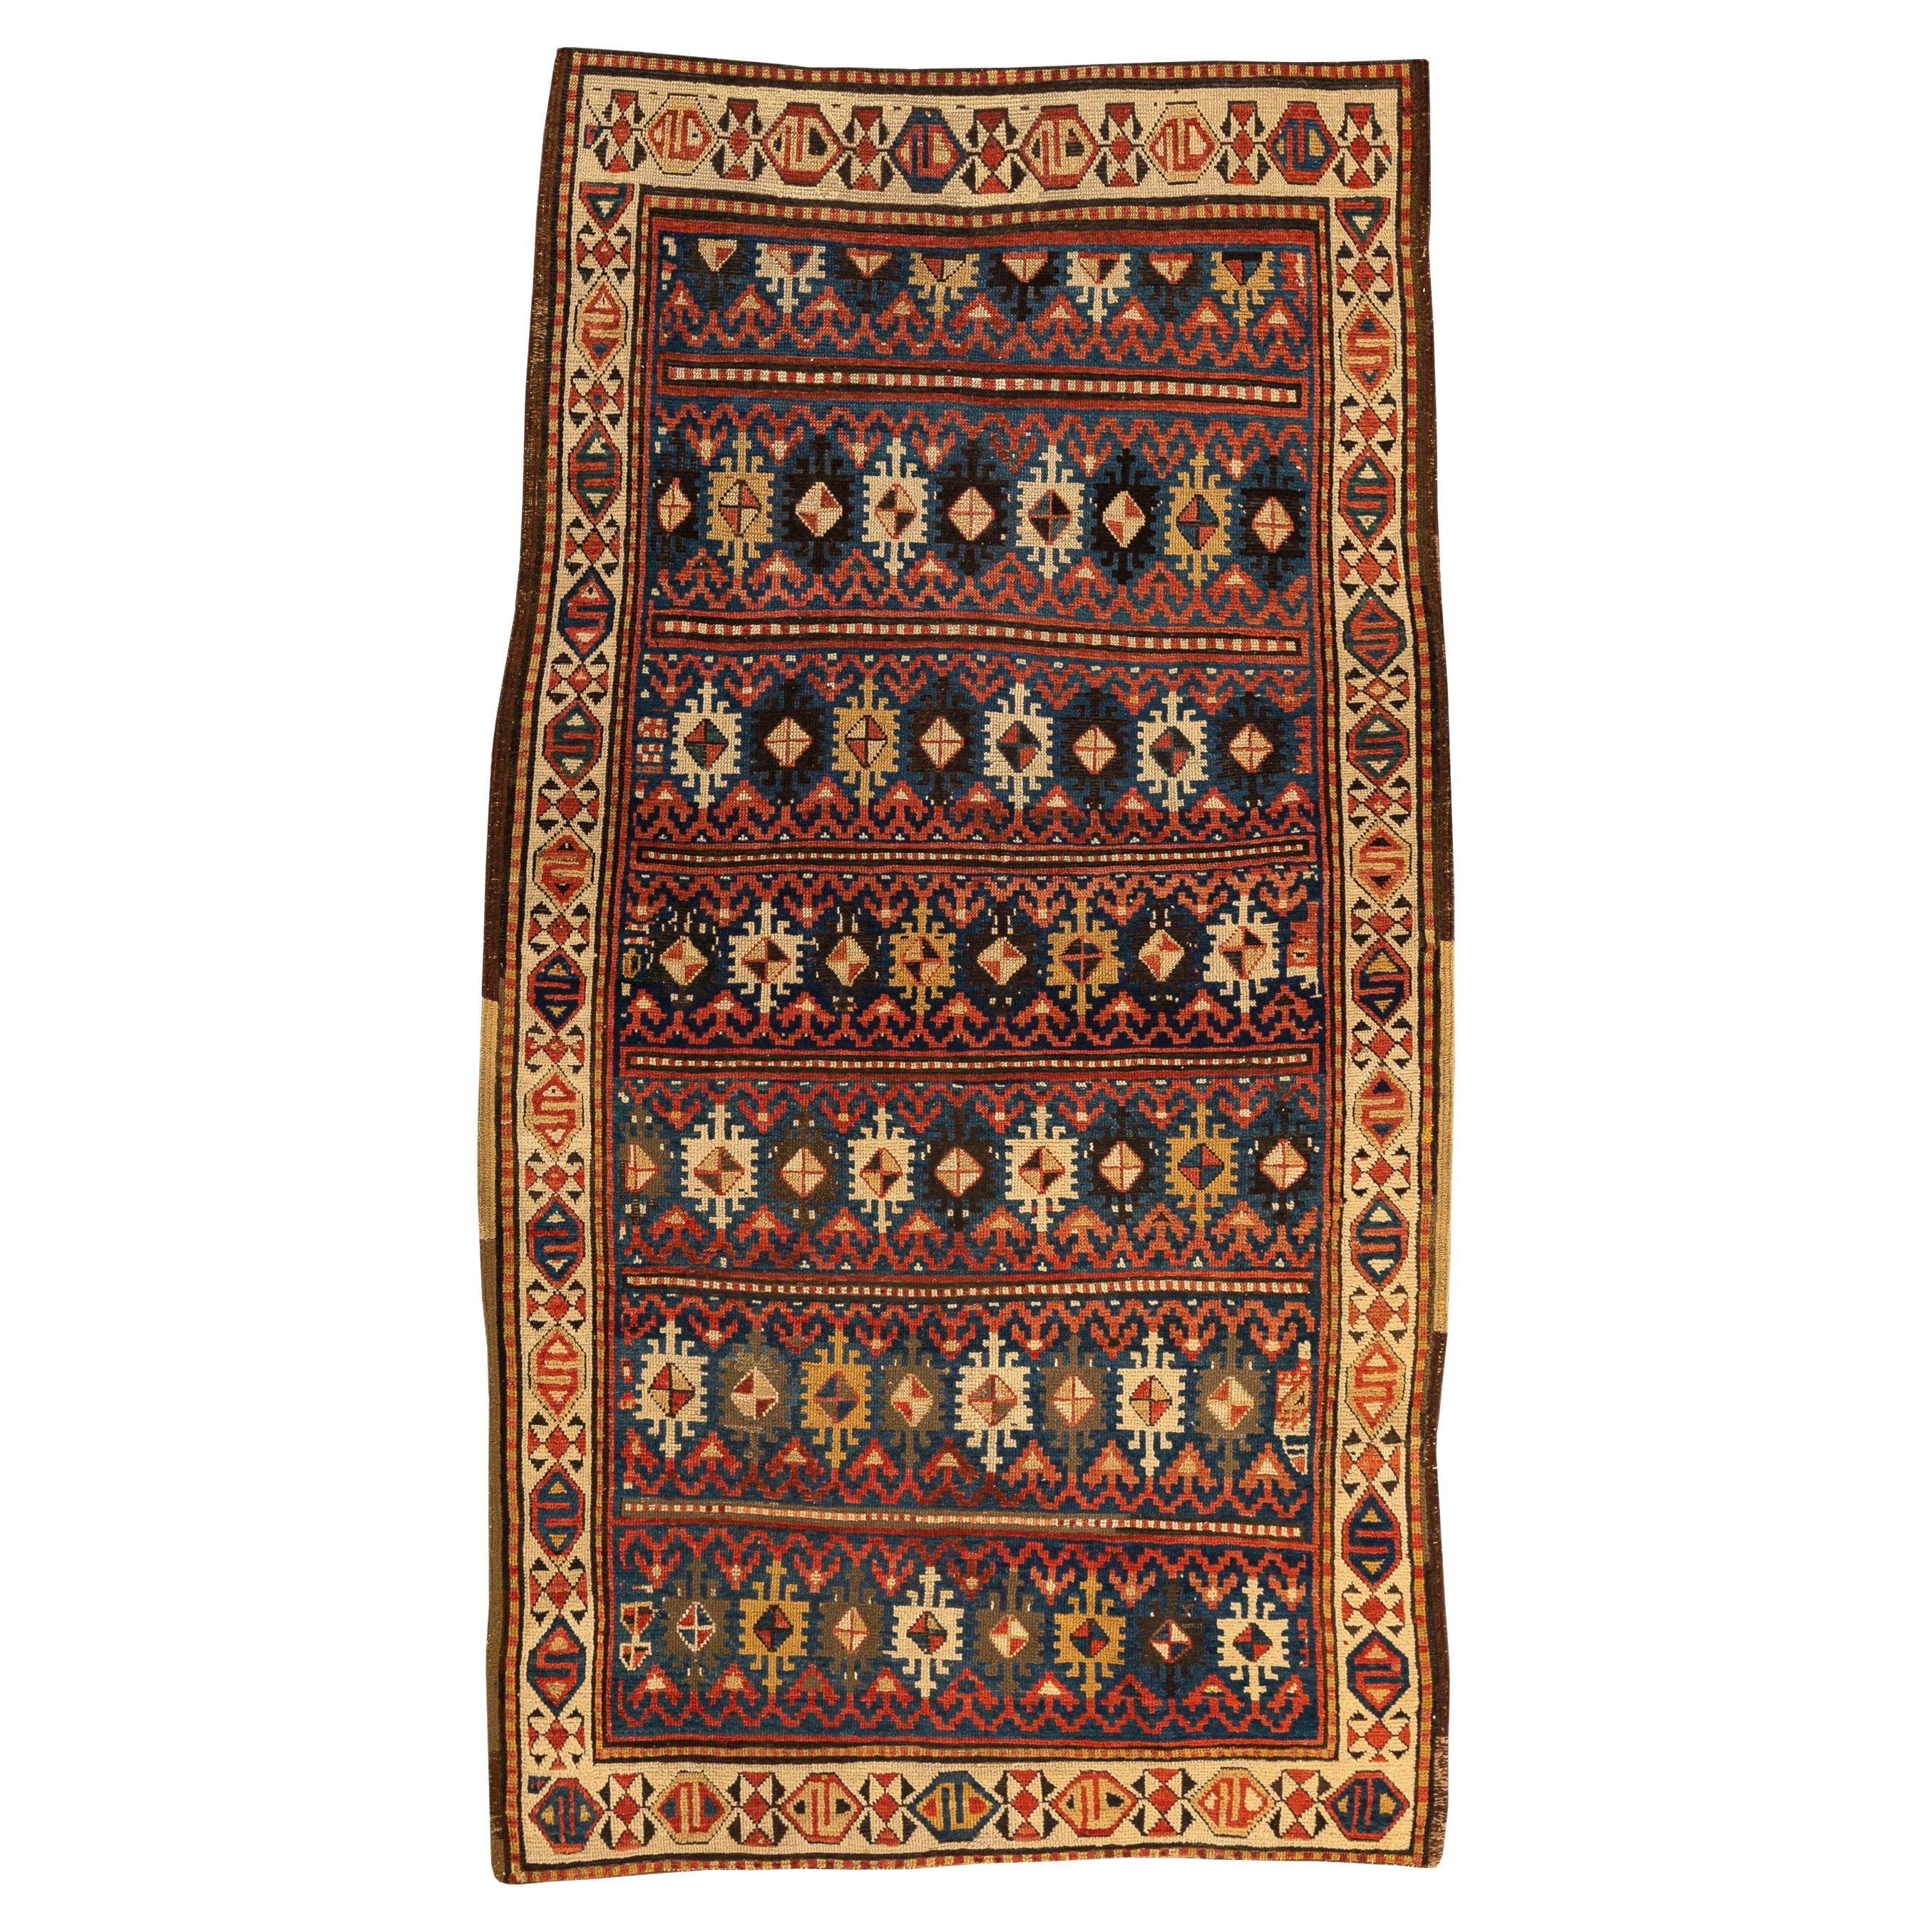 Armenisch-Kasachisch - Zentralkaukasus
Dies ist ein einzigartiger Teppich, der sich von den klassischen kaukasischen Teppichen unterscheidet. Es enthält sieben Reihen mit bunten geometrischen Figuren, die aus gezackten Quadraten mit Rauten in der